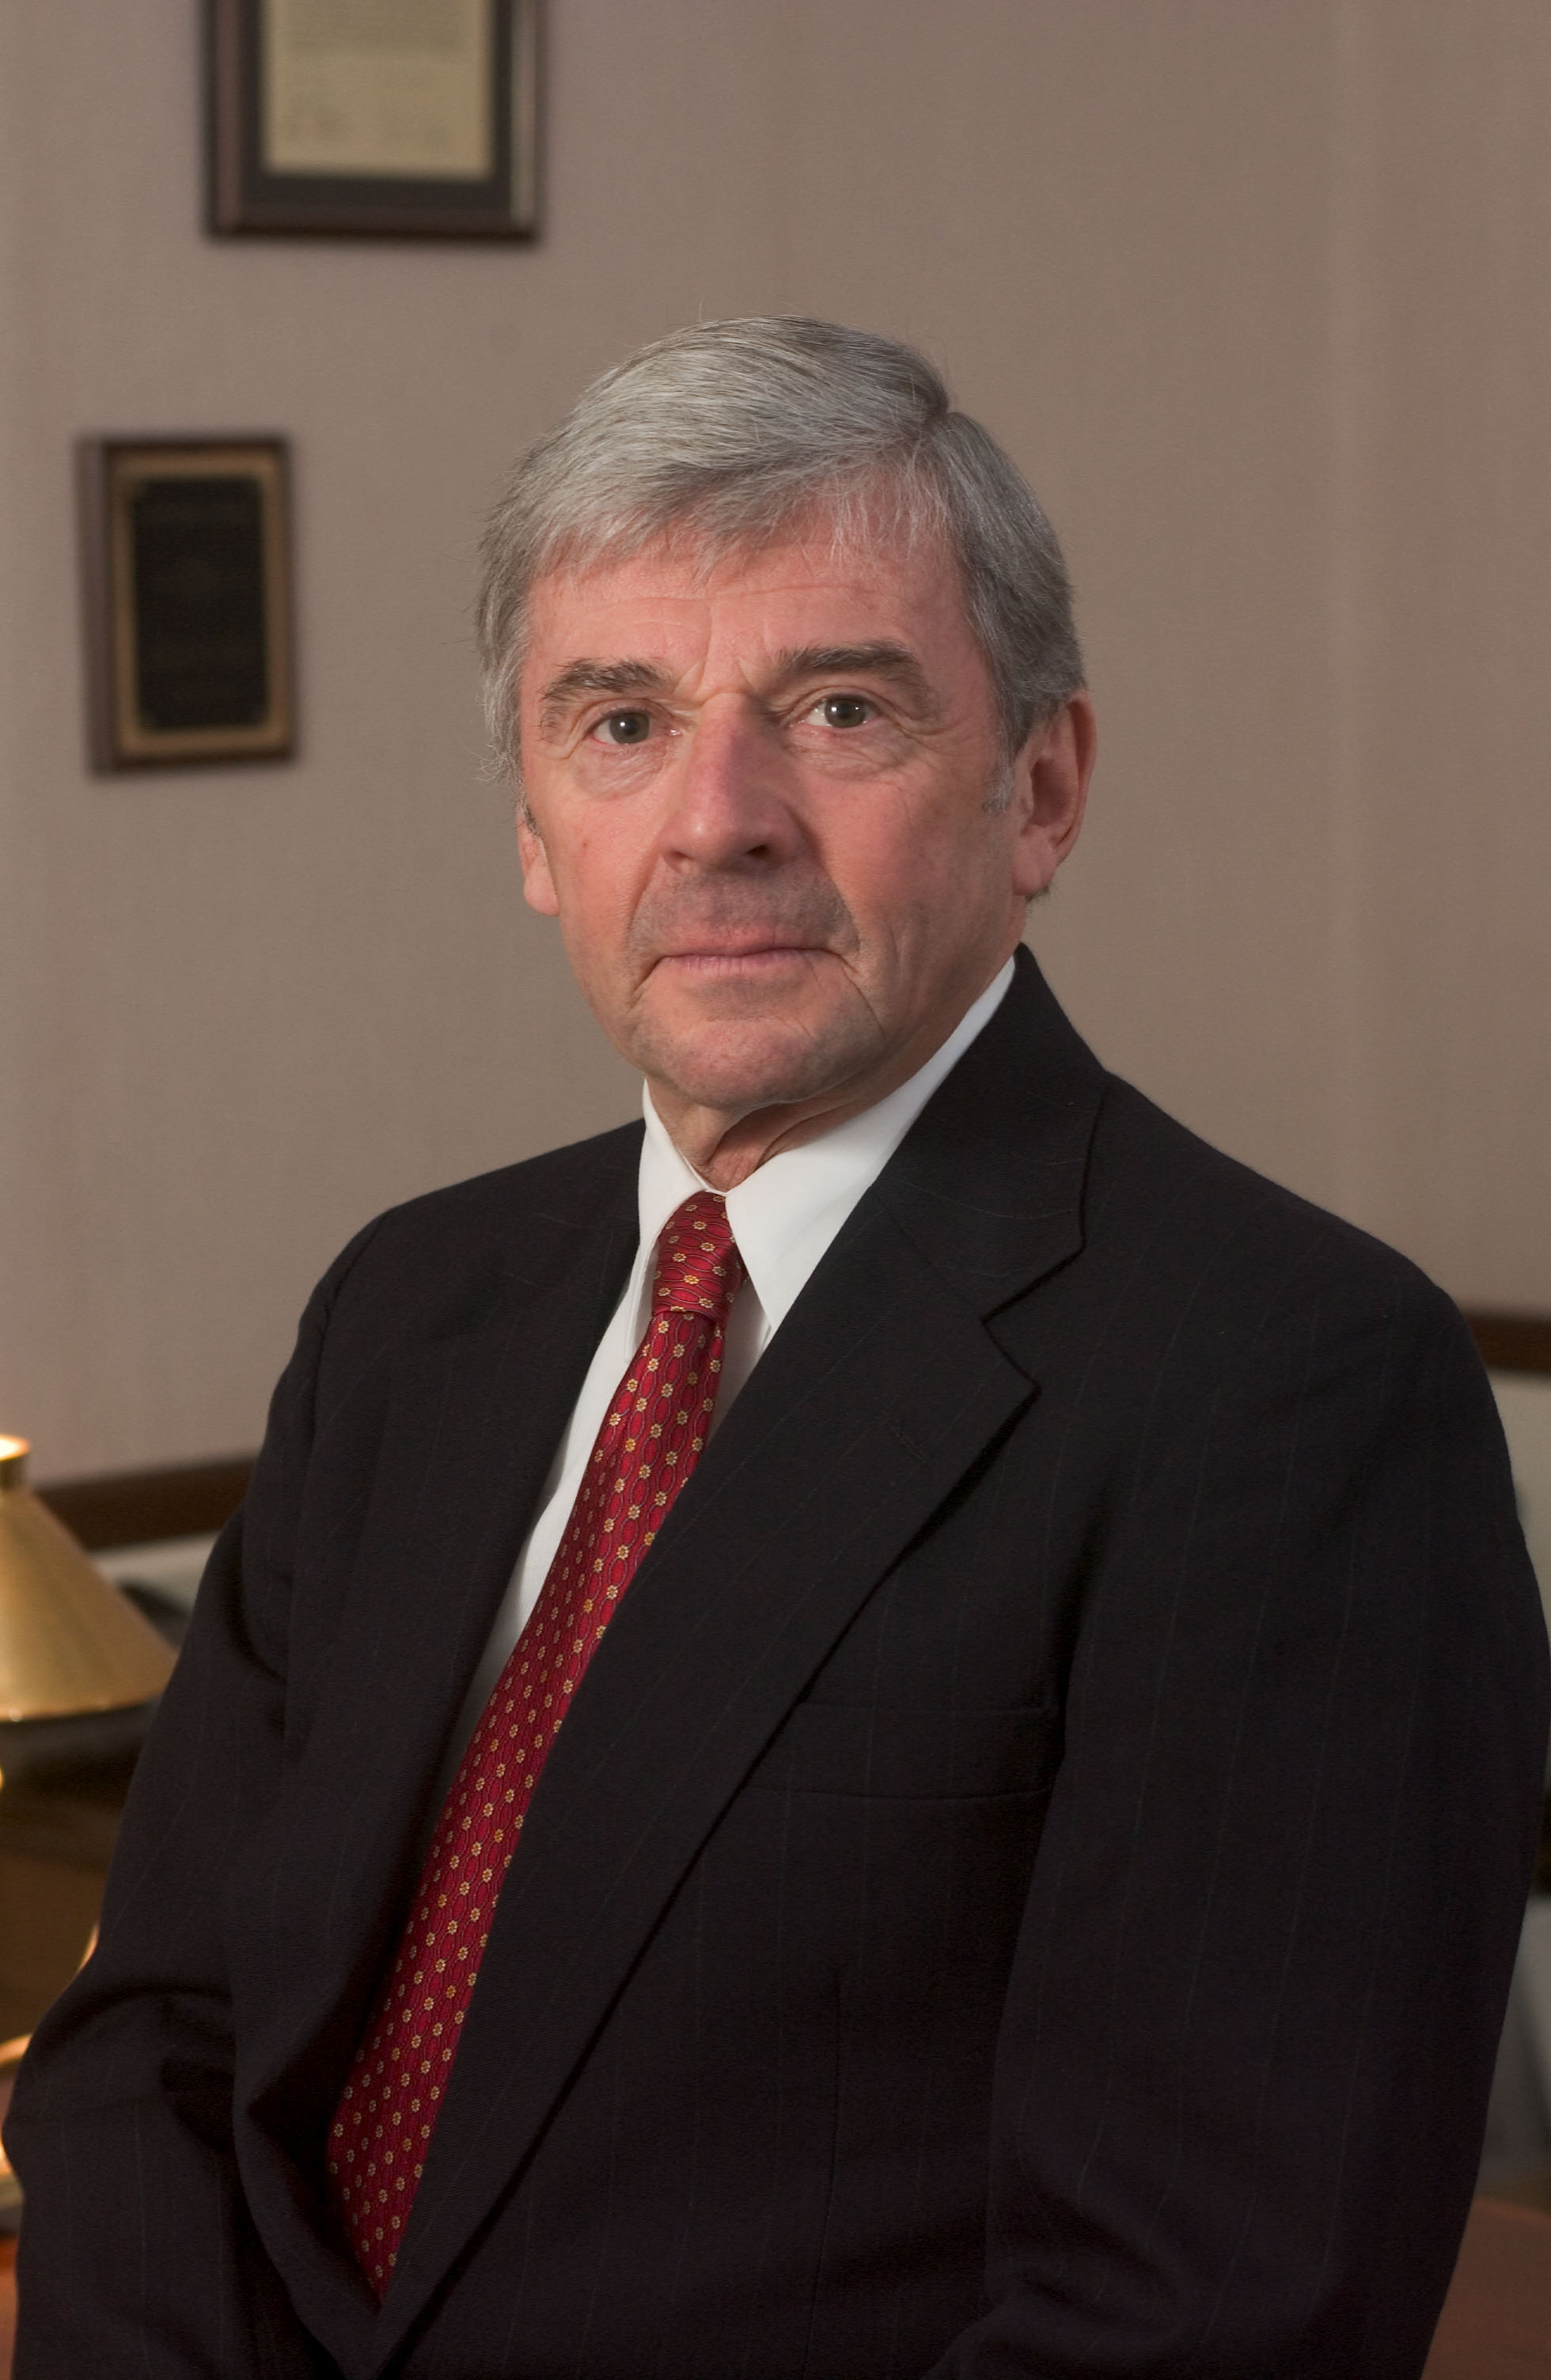 Richard E. Sorensen